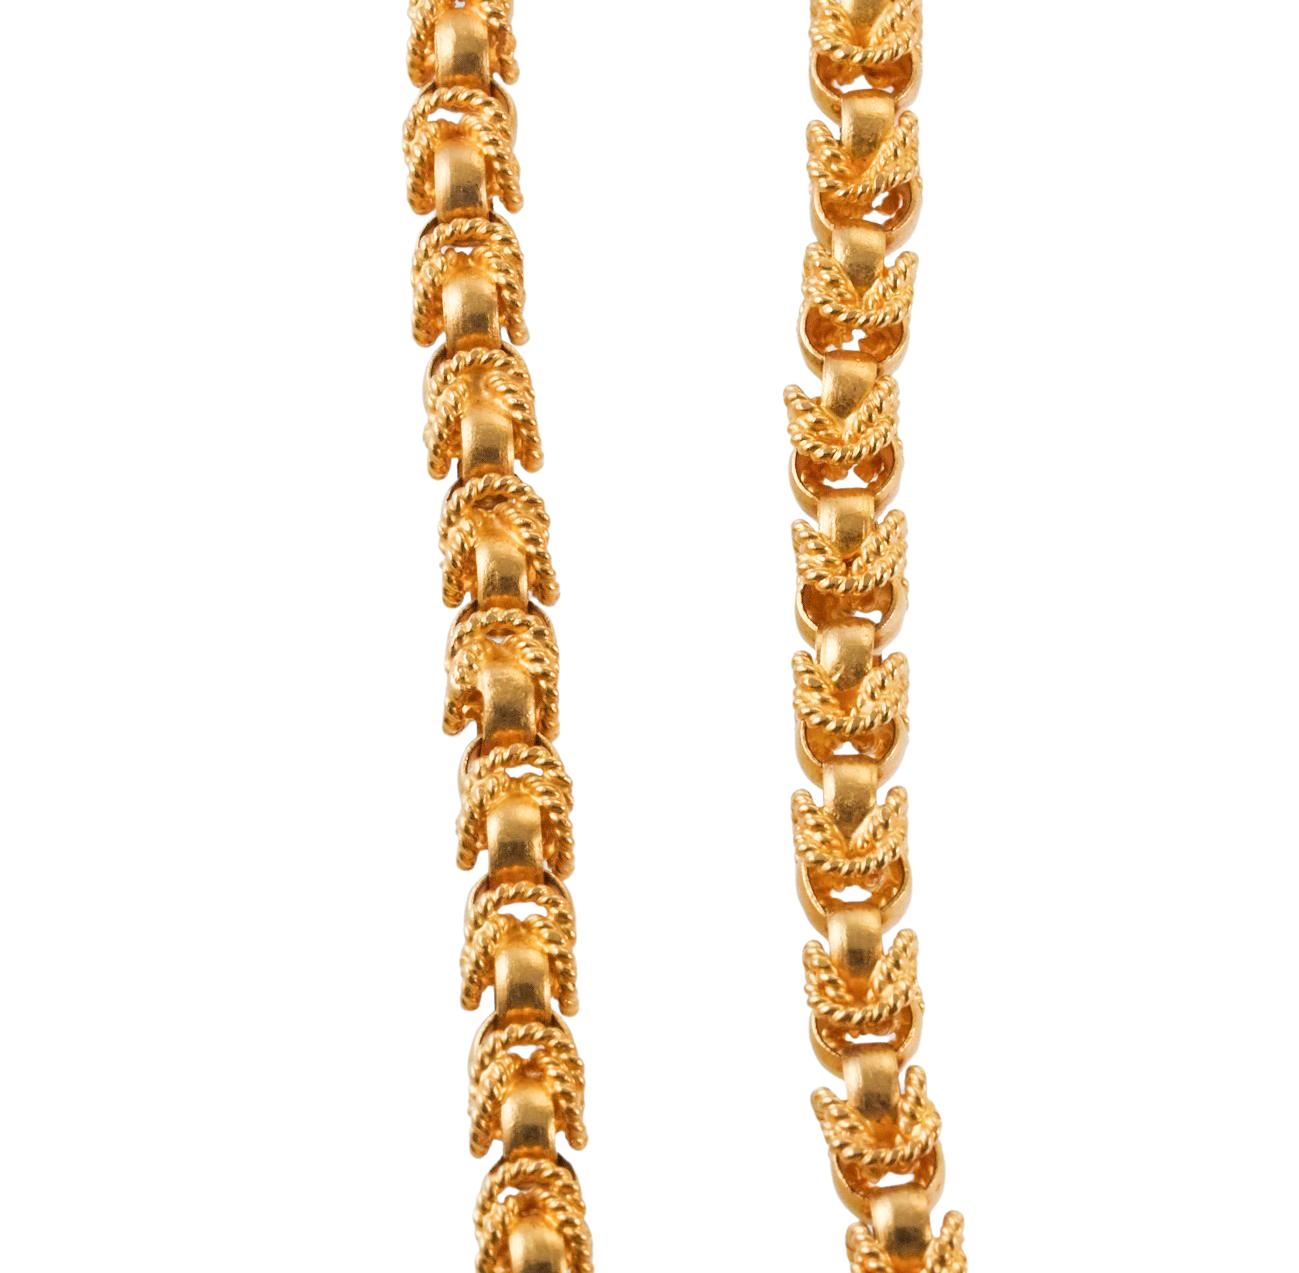 Collier à chaîne extra longue en or jaune 18 carats, présentant un design complexe de maillons - cercles tissés et polis entrelacés.  Le collier n'a pas de fermoir ni d'ouverture et mesure 54